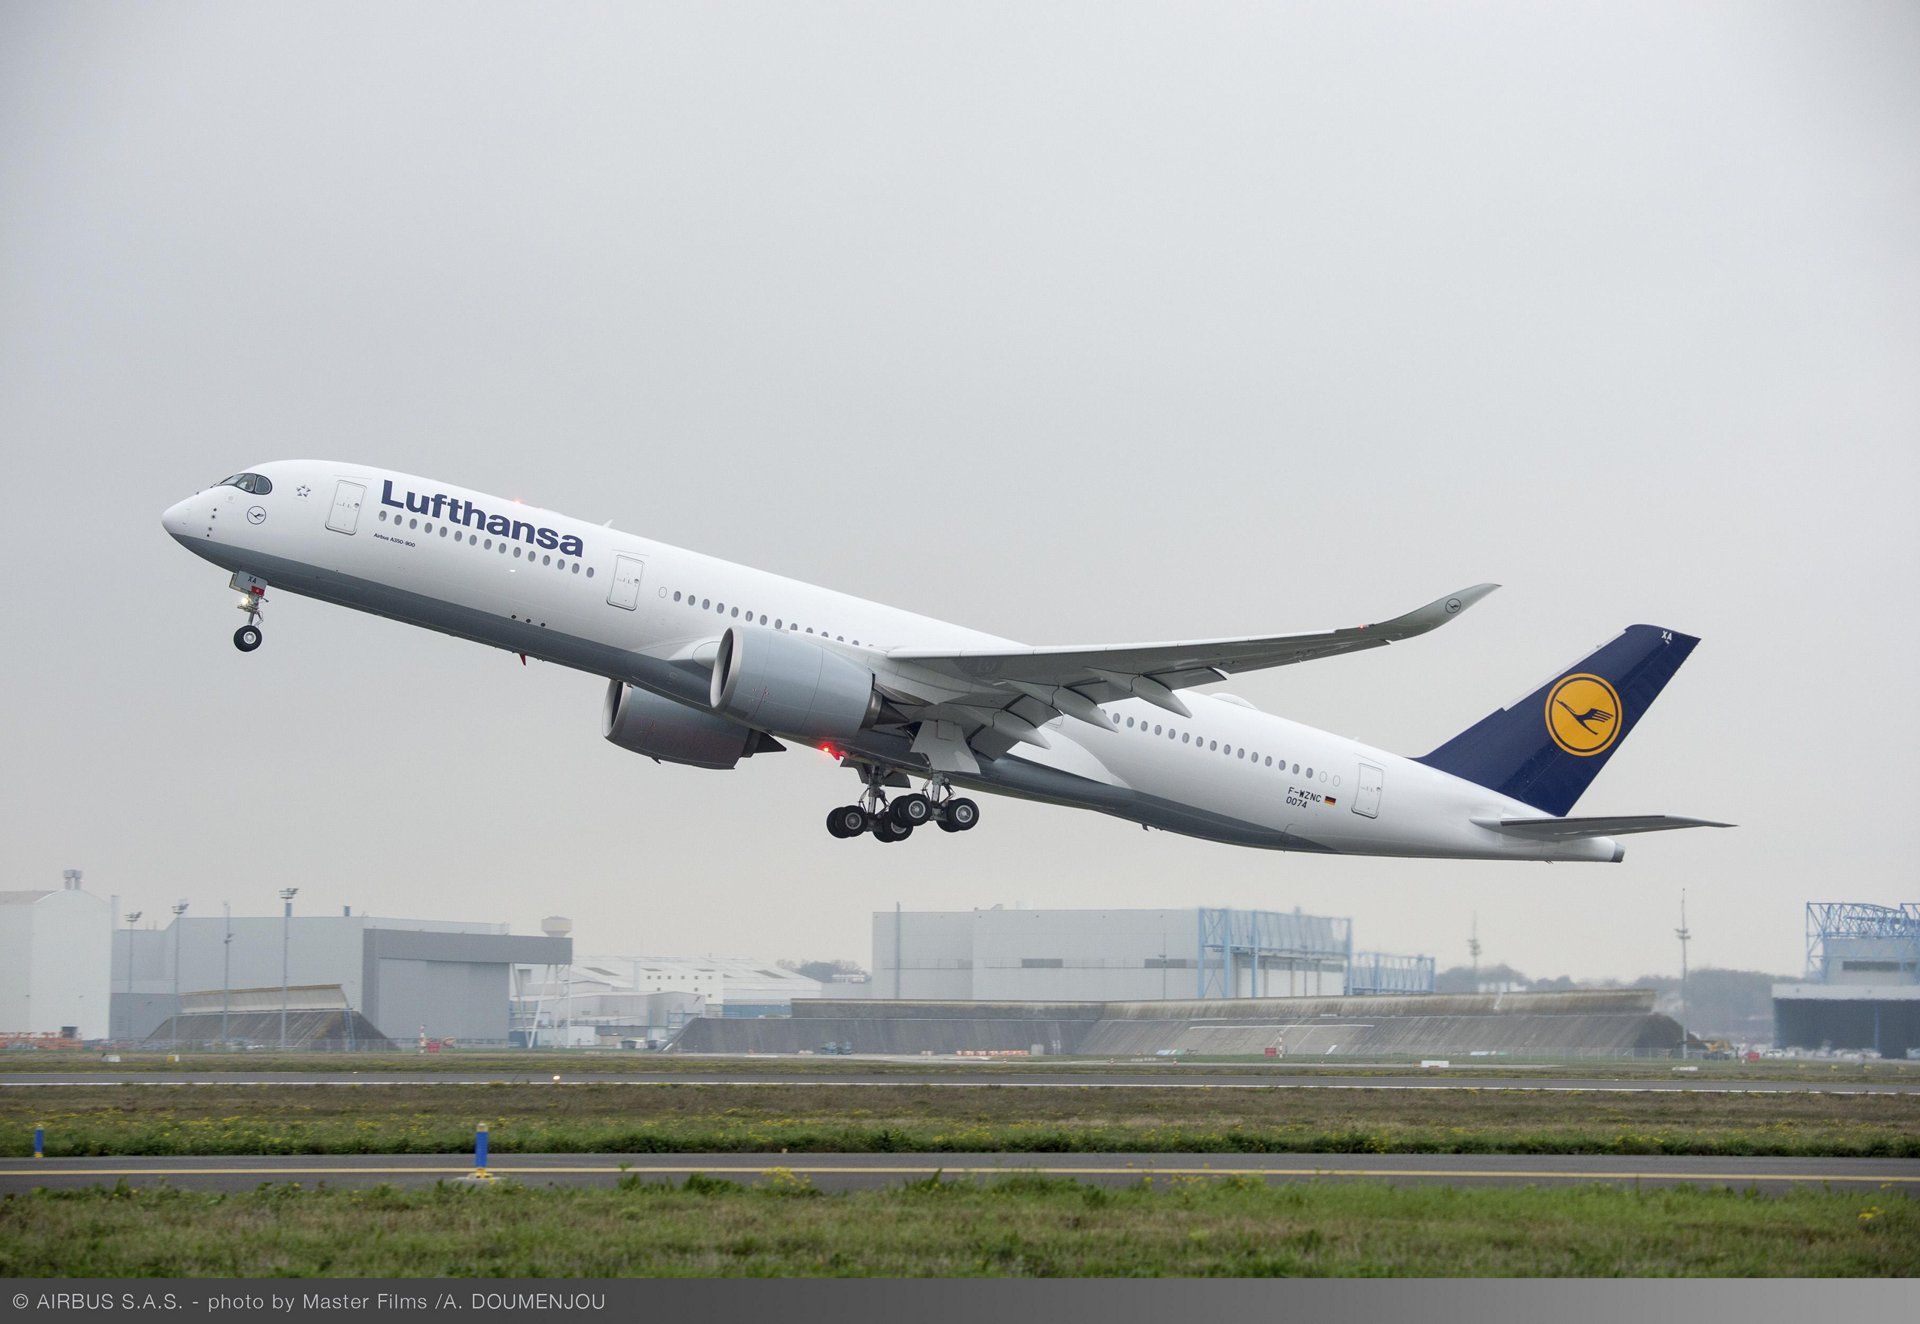 Airbus A350-900 v barvách společnosti Lufthansa. Foto: Airbus